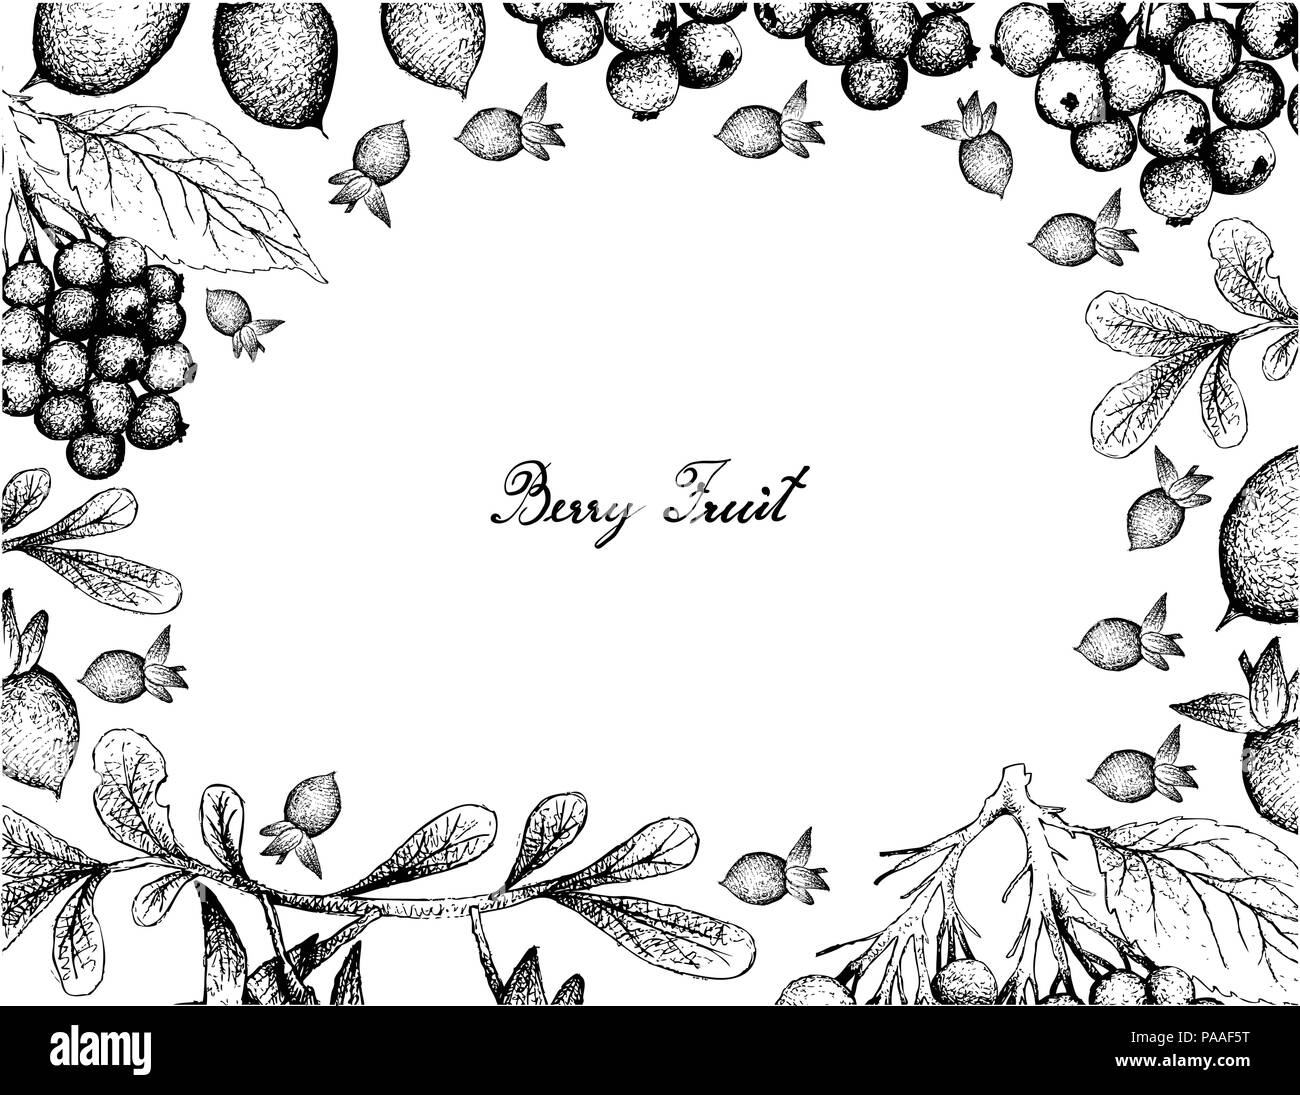 Beerenfrucht, Illustration Hand gezeichnete Skizze von Holunder oder Sambucus Nigra und Diospyros Lycioides Früchte isoliert auf weißem Hintergrund. Stock Vektor